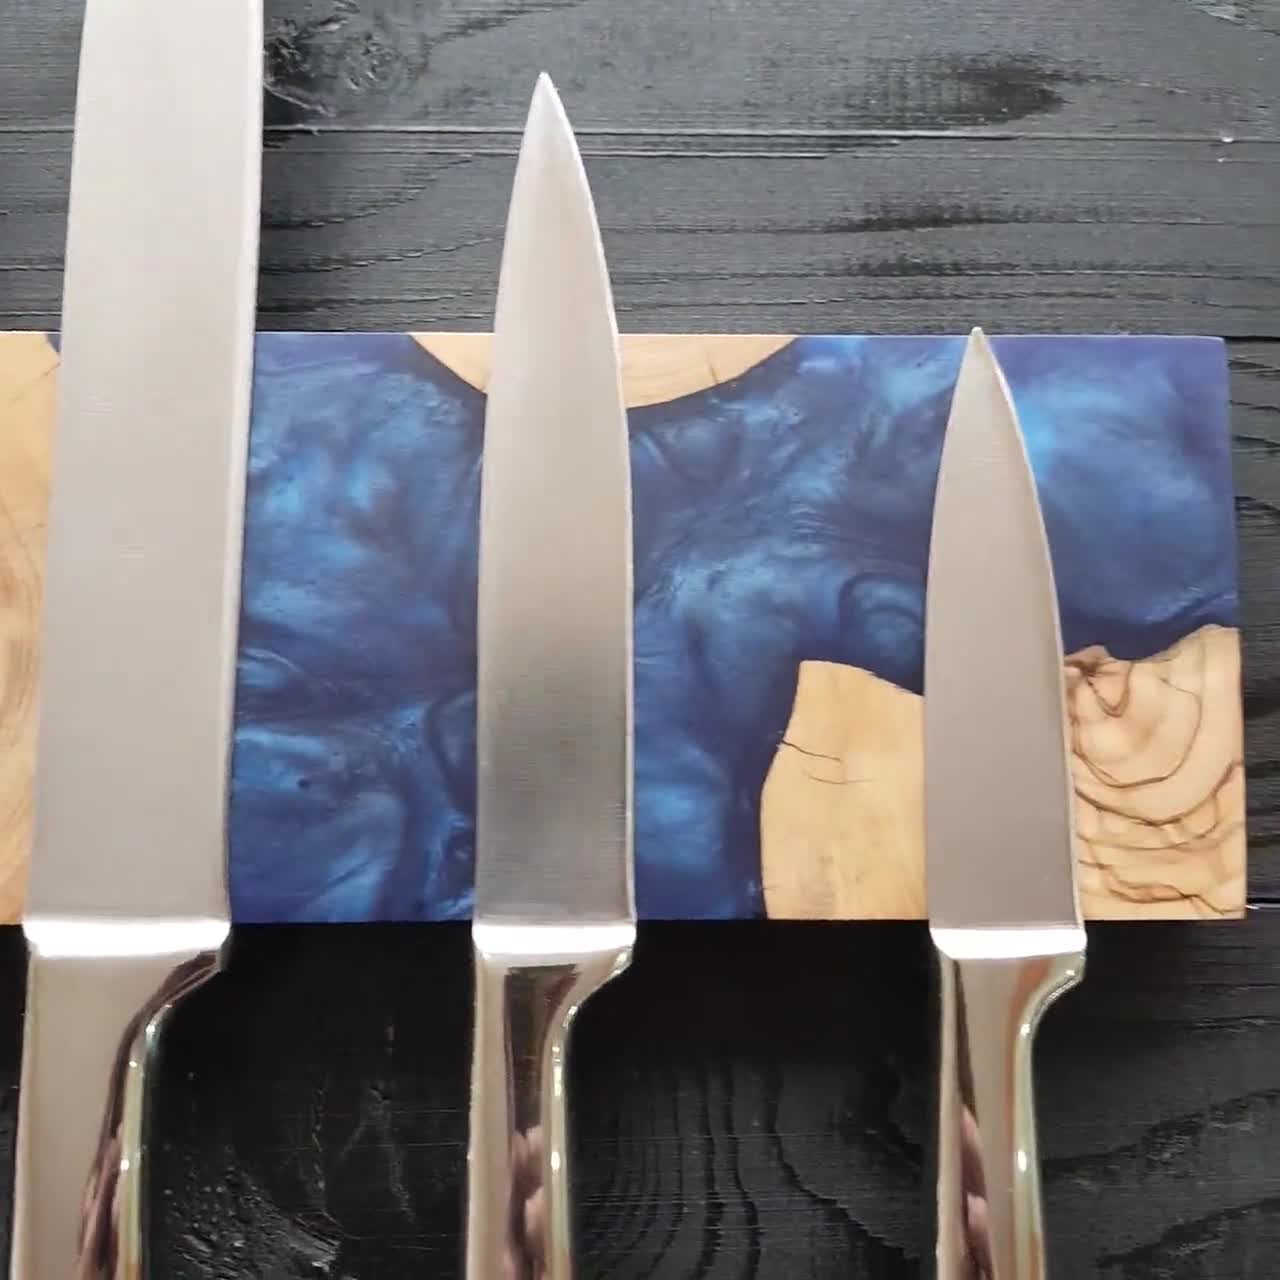 Custom Handmade Magnetic Knife Holder,Resin and Olive Wood Knife  Rack,Magnetic Bar for Knives, Knife Rack, Kitchen Utensil Holder